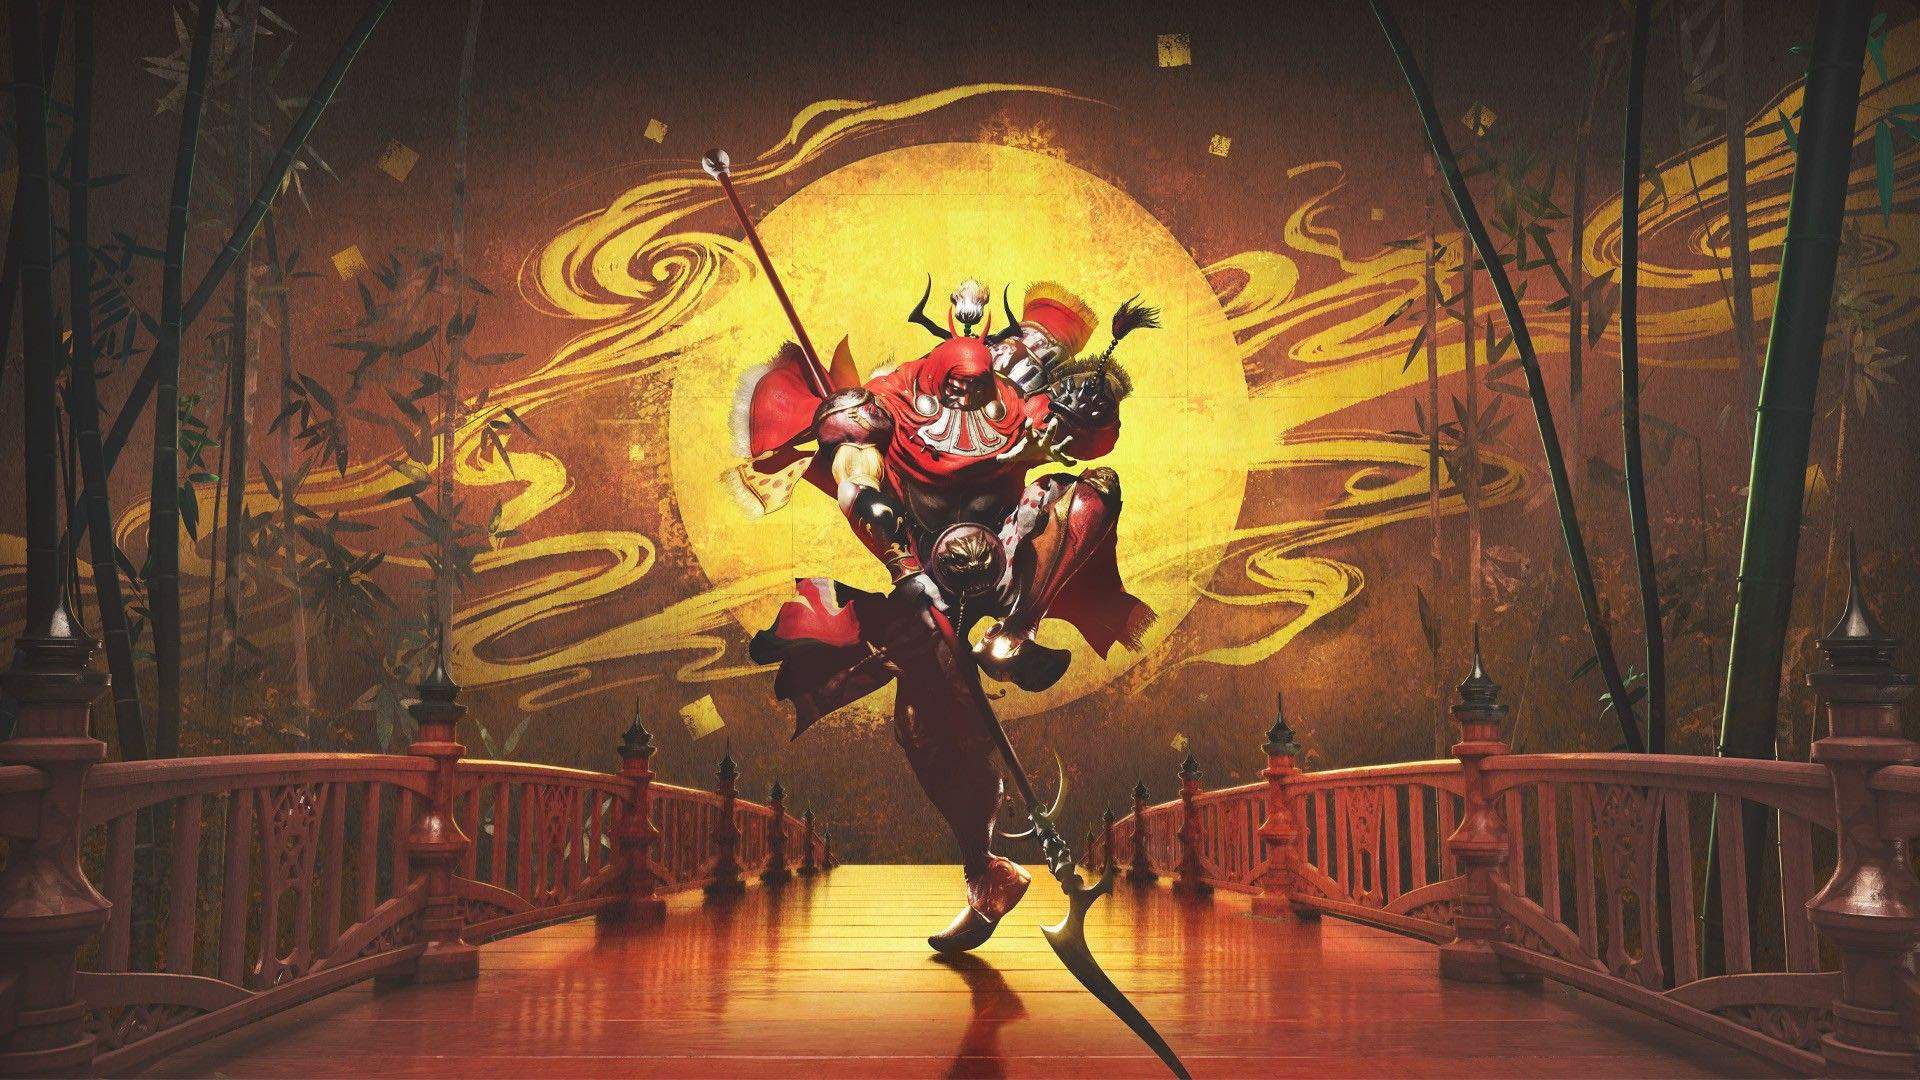 Ein geheimnisvoller roter Krieger mit einem Speer tanzt auf einer Brücke.